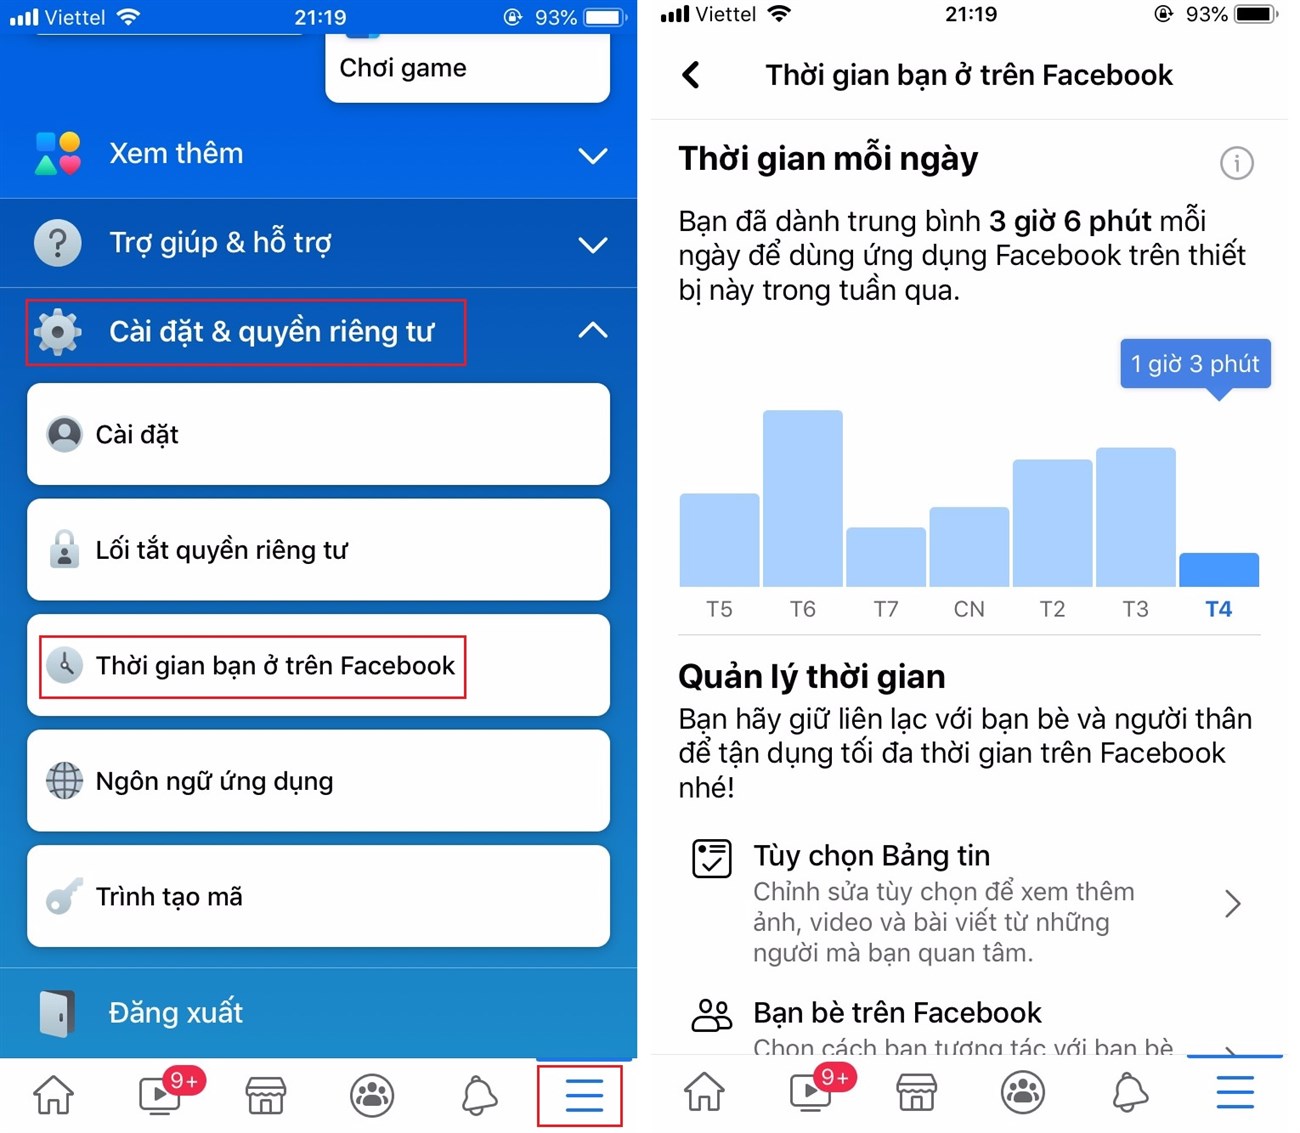 Hướng dẫn cách kiểm tra và quản lý thời gian sử dụng Facebook nhanh chóng, chính xác nhất > Cách xem thời gian hoạt động của bạn trên Facebook